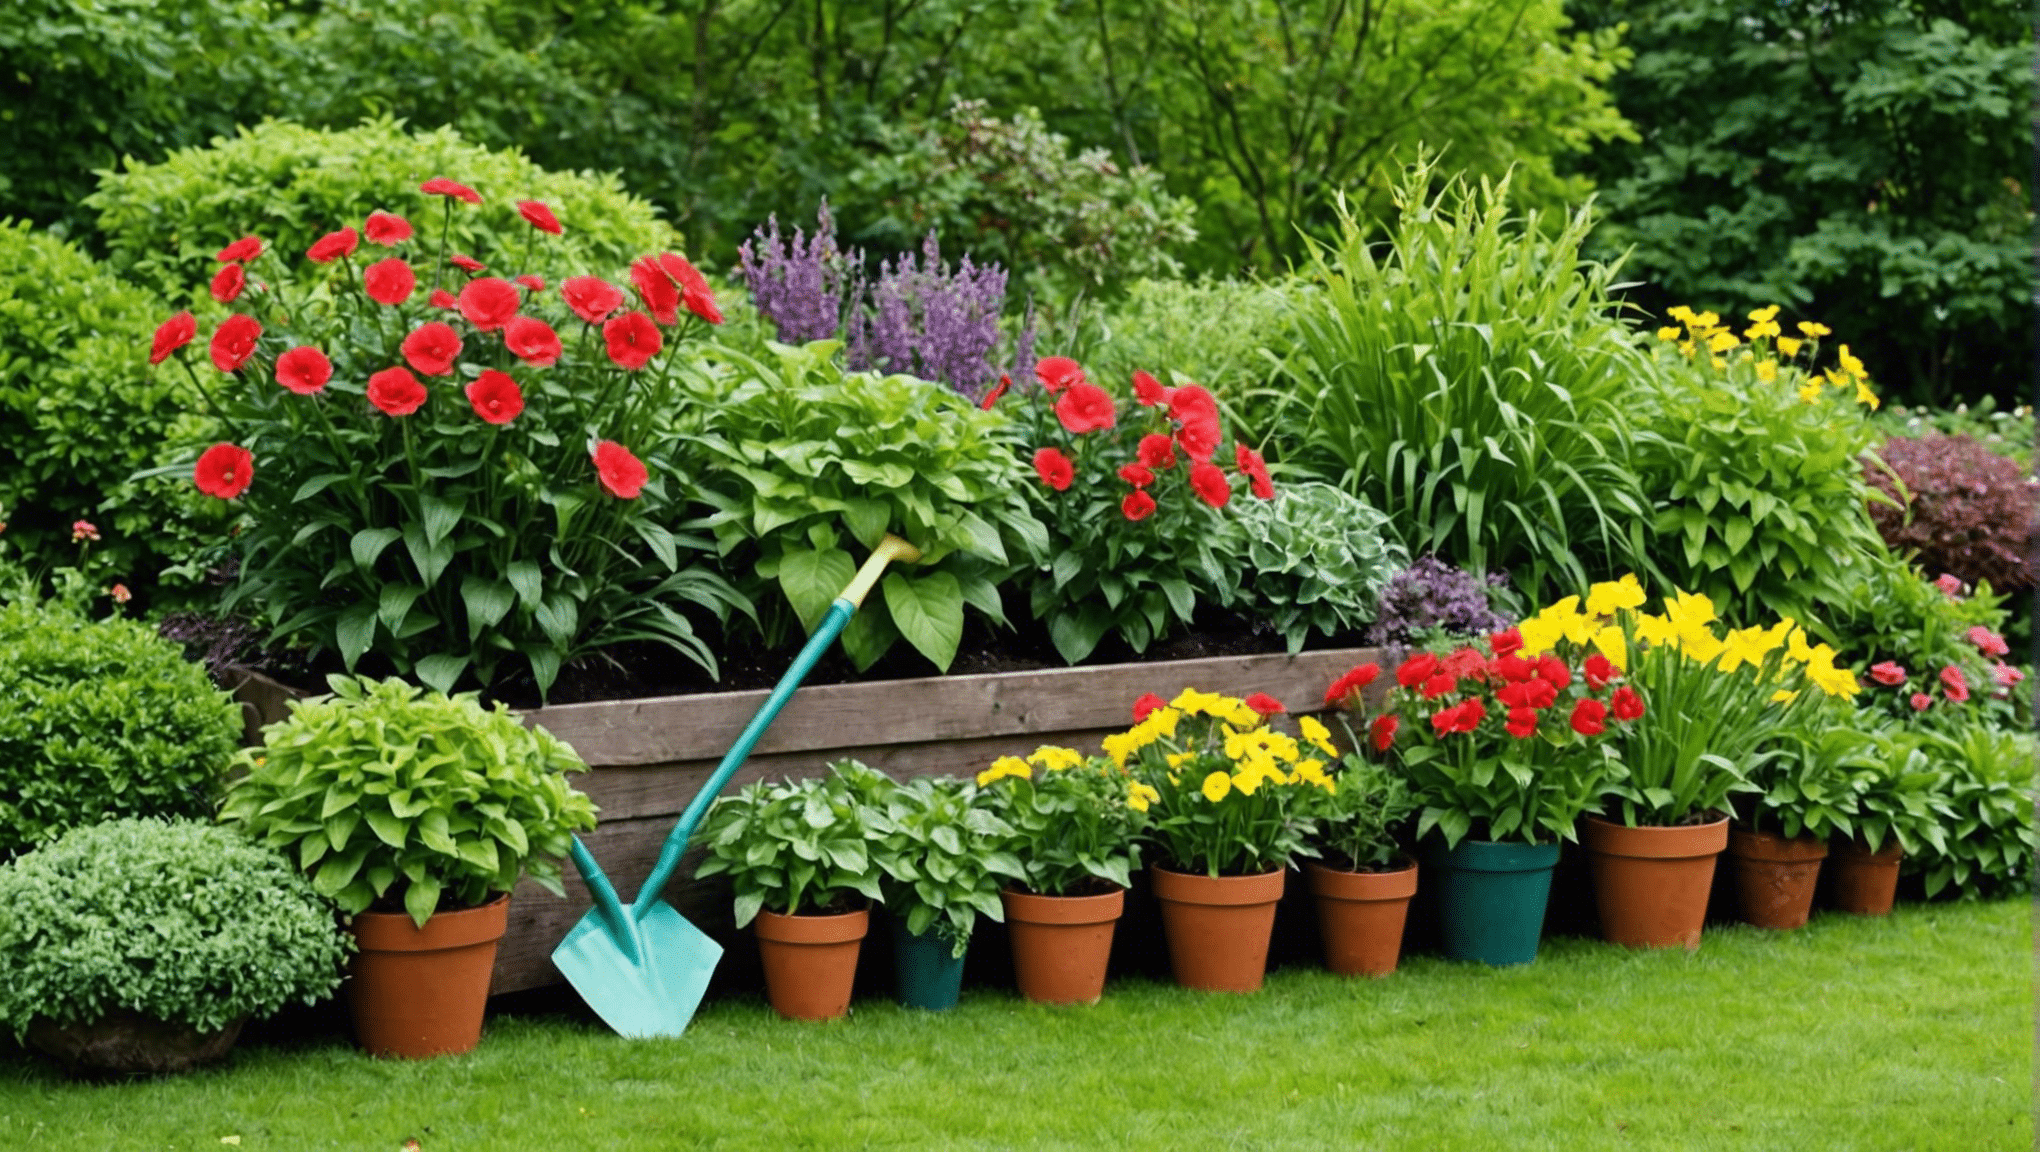 trova ispirazione e fantastiche idee regalo per il giardinaggio con la nostra collezione curata di prodotti perfetti per ogni appassionato di pollice verde.